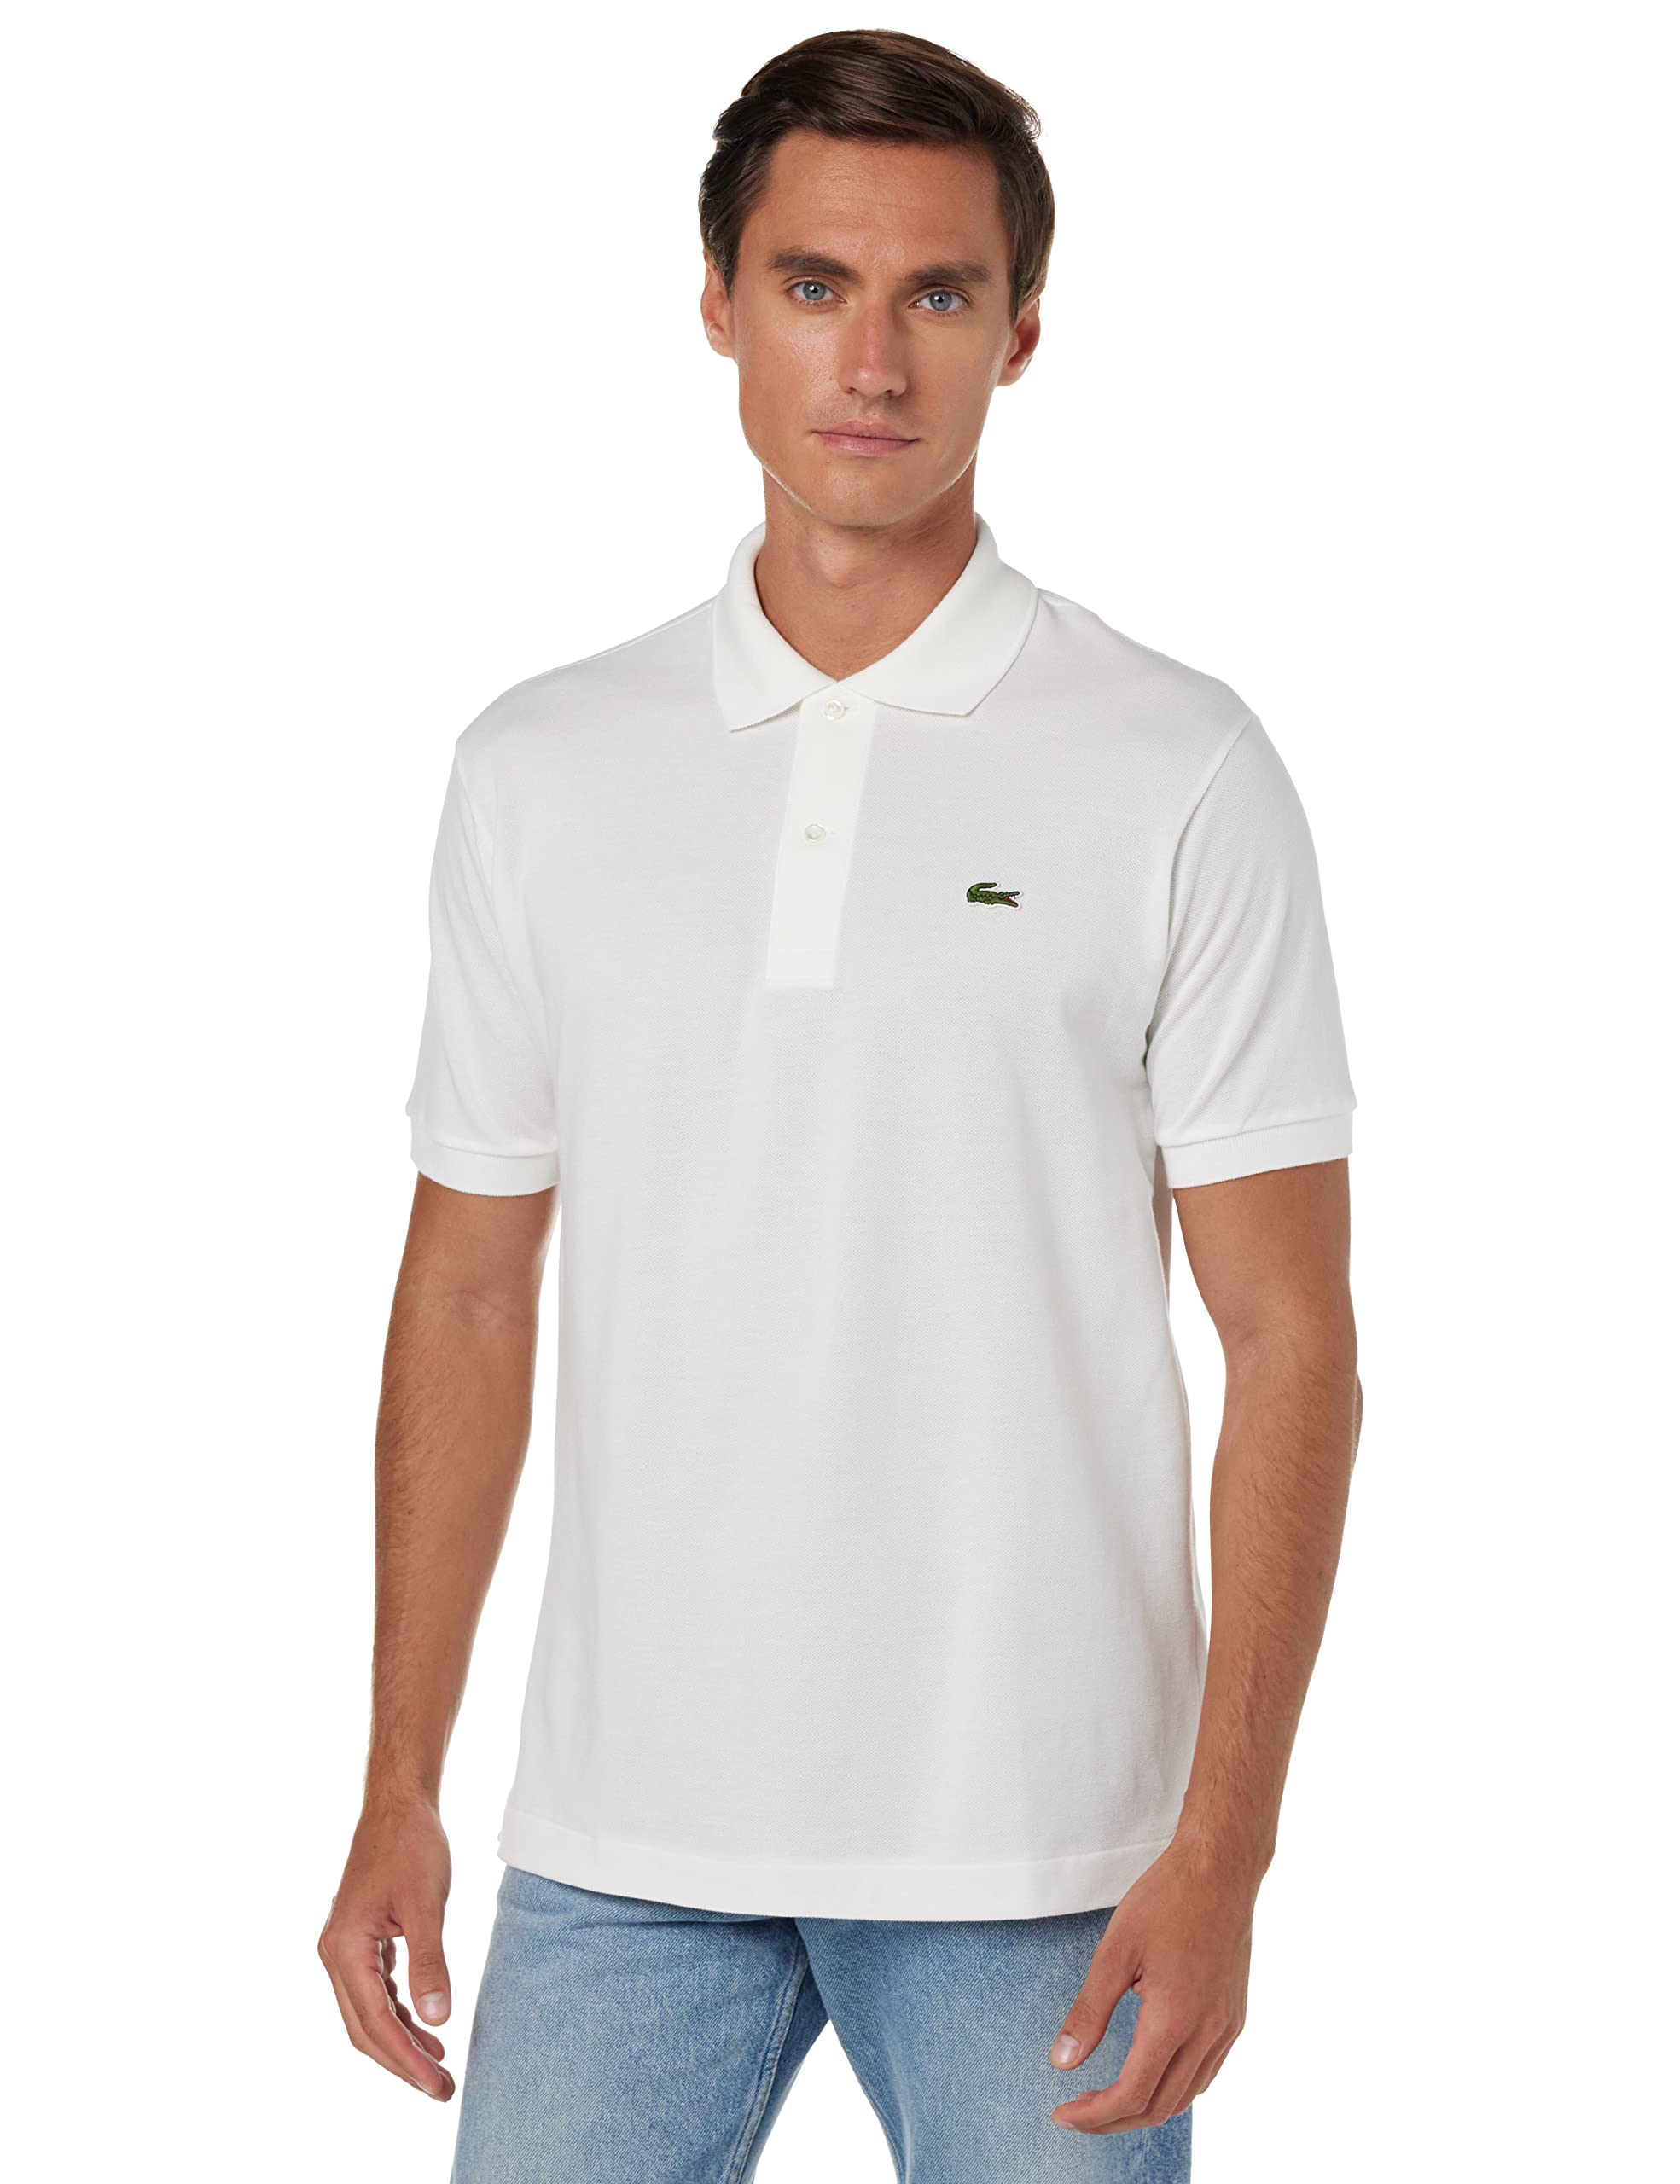 Lacoste Herren Poloshirt L1212, Weiß (Blanc), M